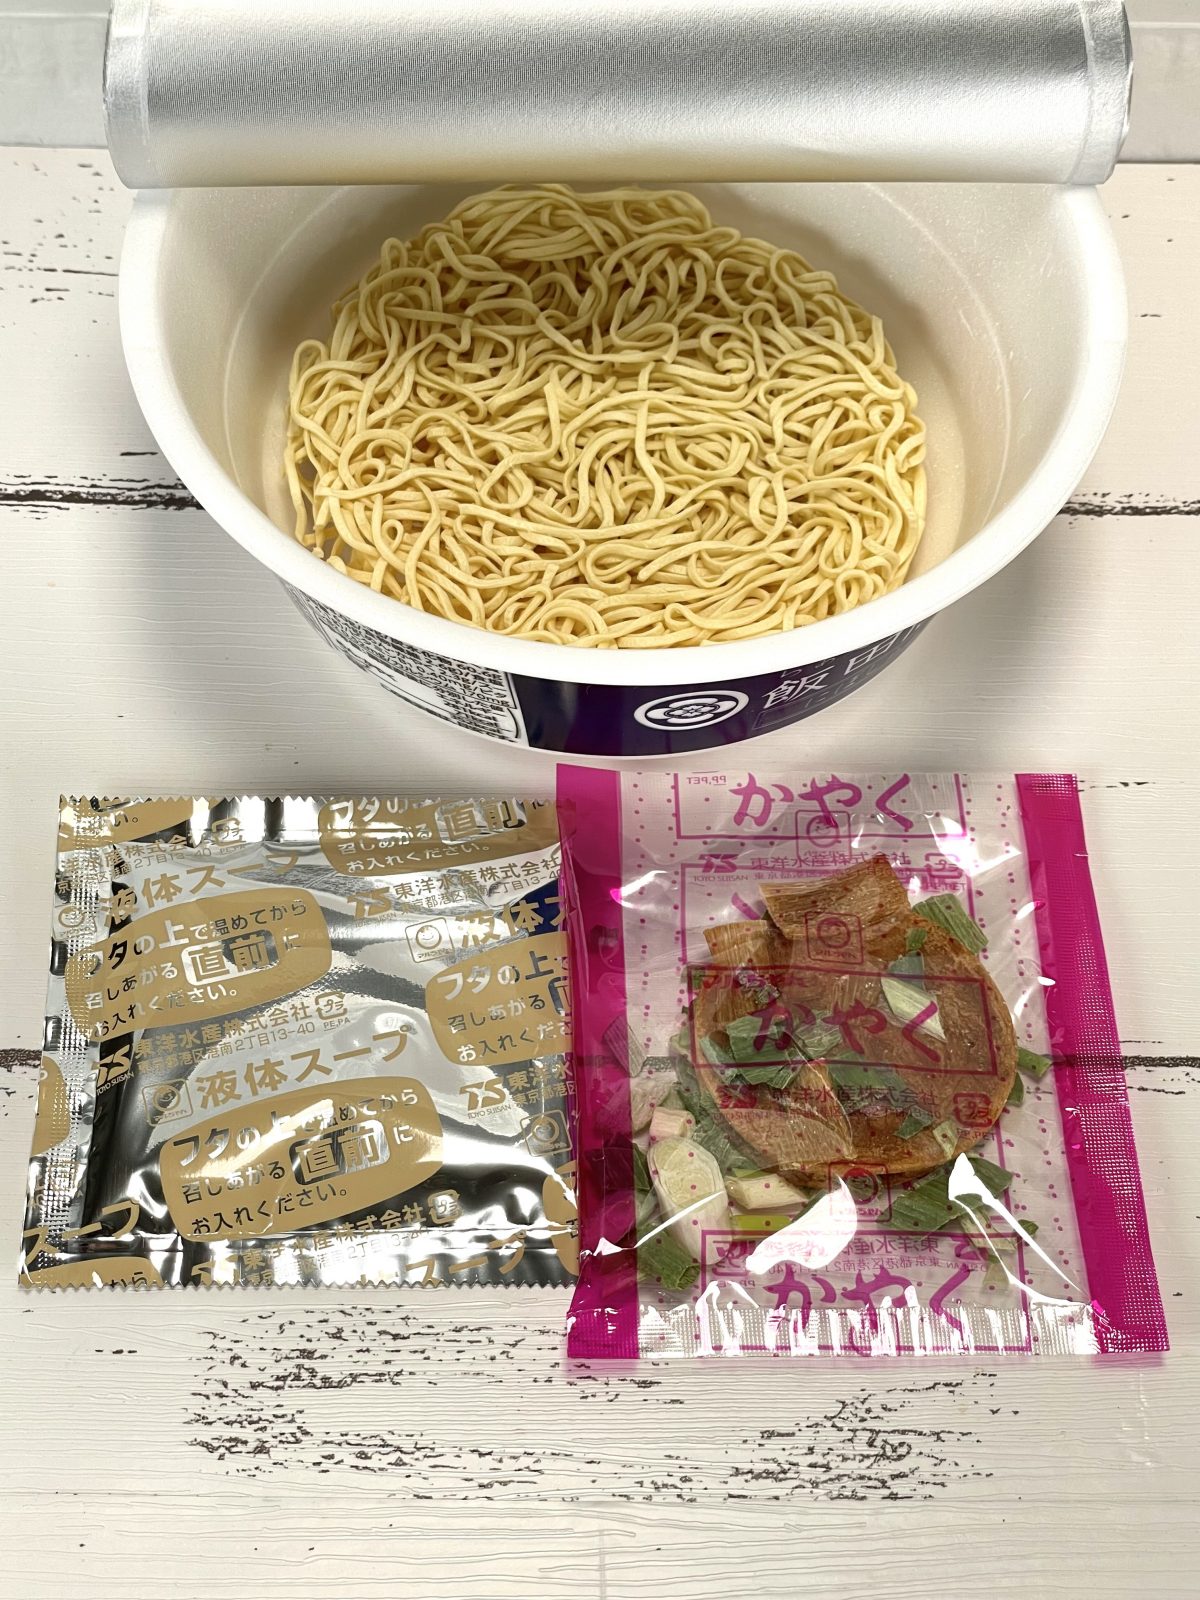 1.「セブンプレミアム飯田商店 にぼしらぁ麺」（東洋水産）煮干し系は添付される袋が多くなる傾向にありますが、なんとスープとかやくのみという潔さ